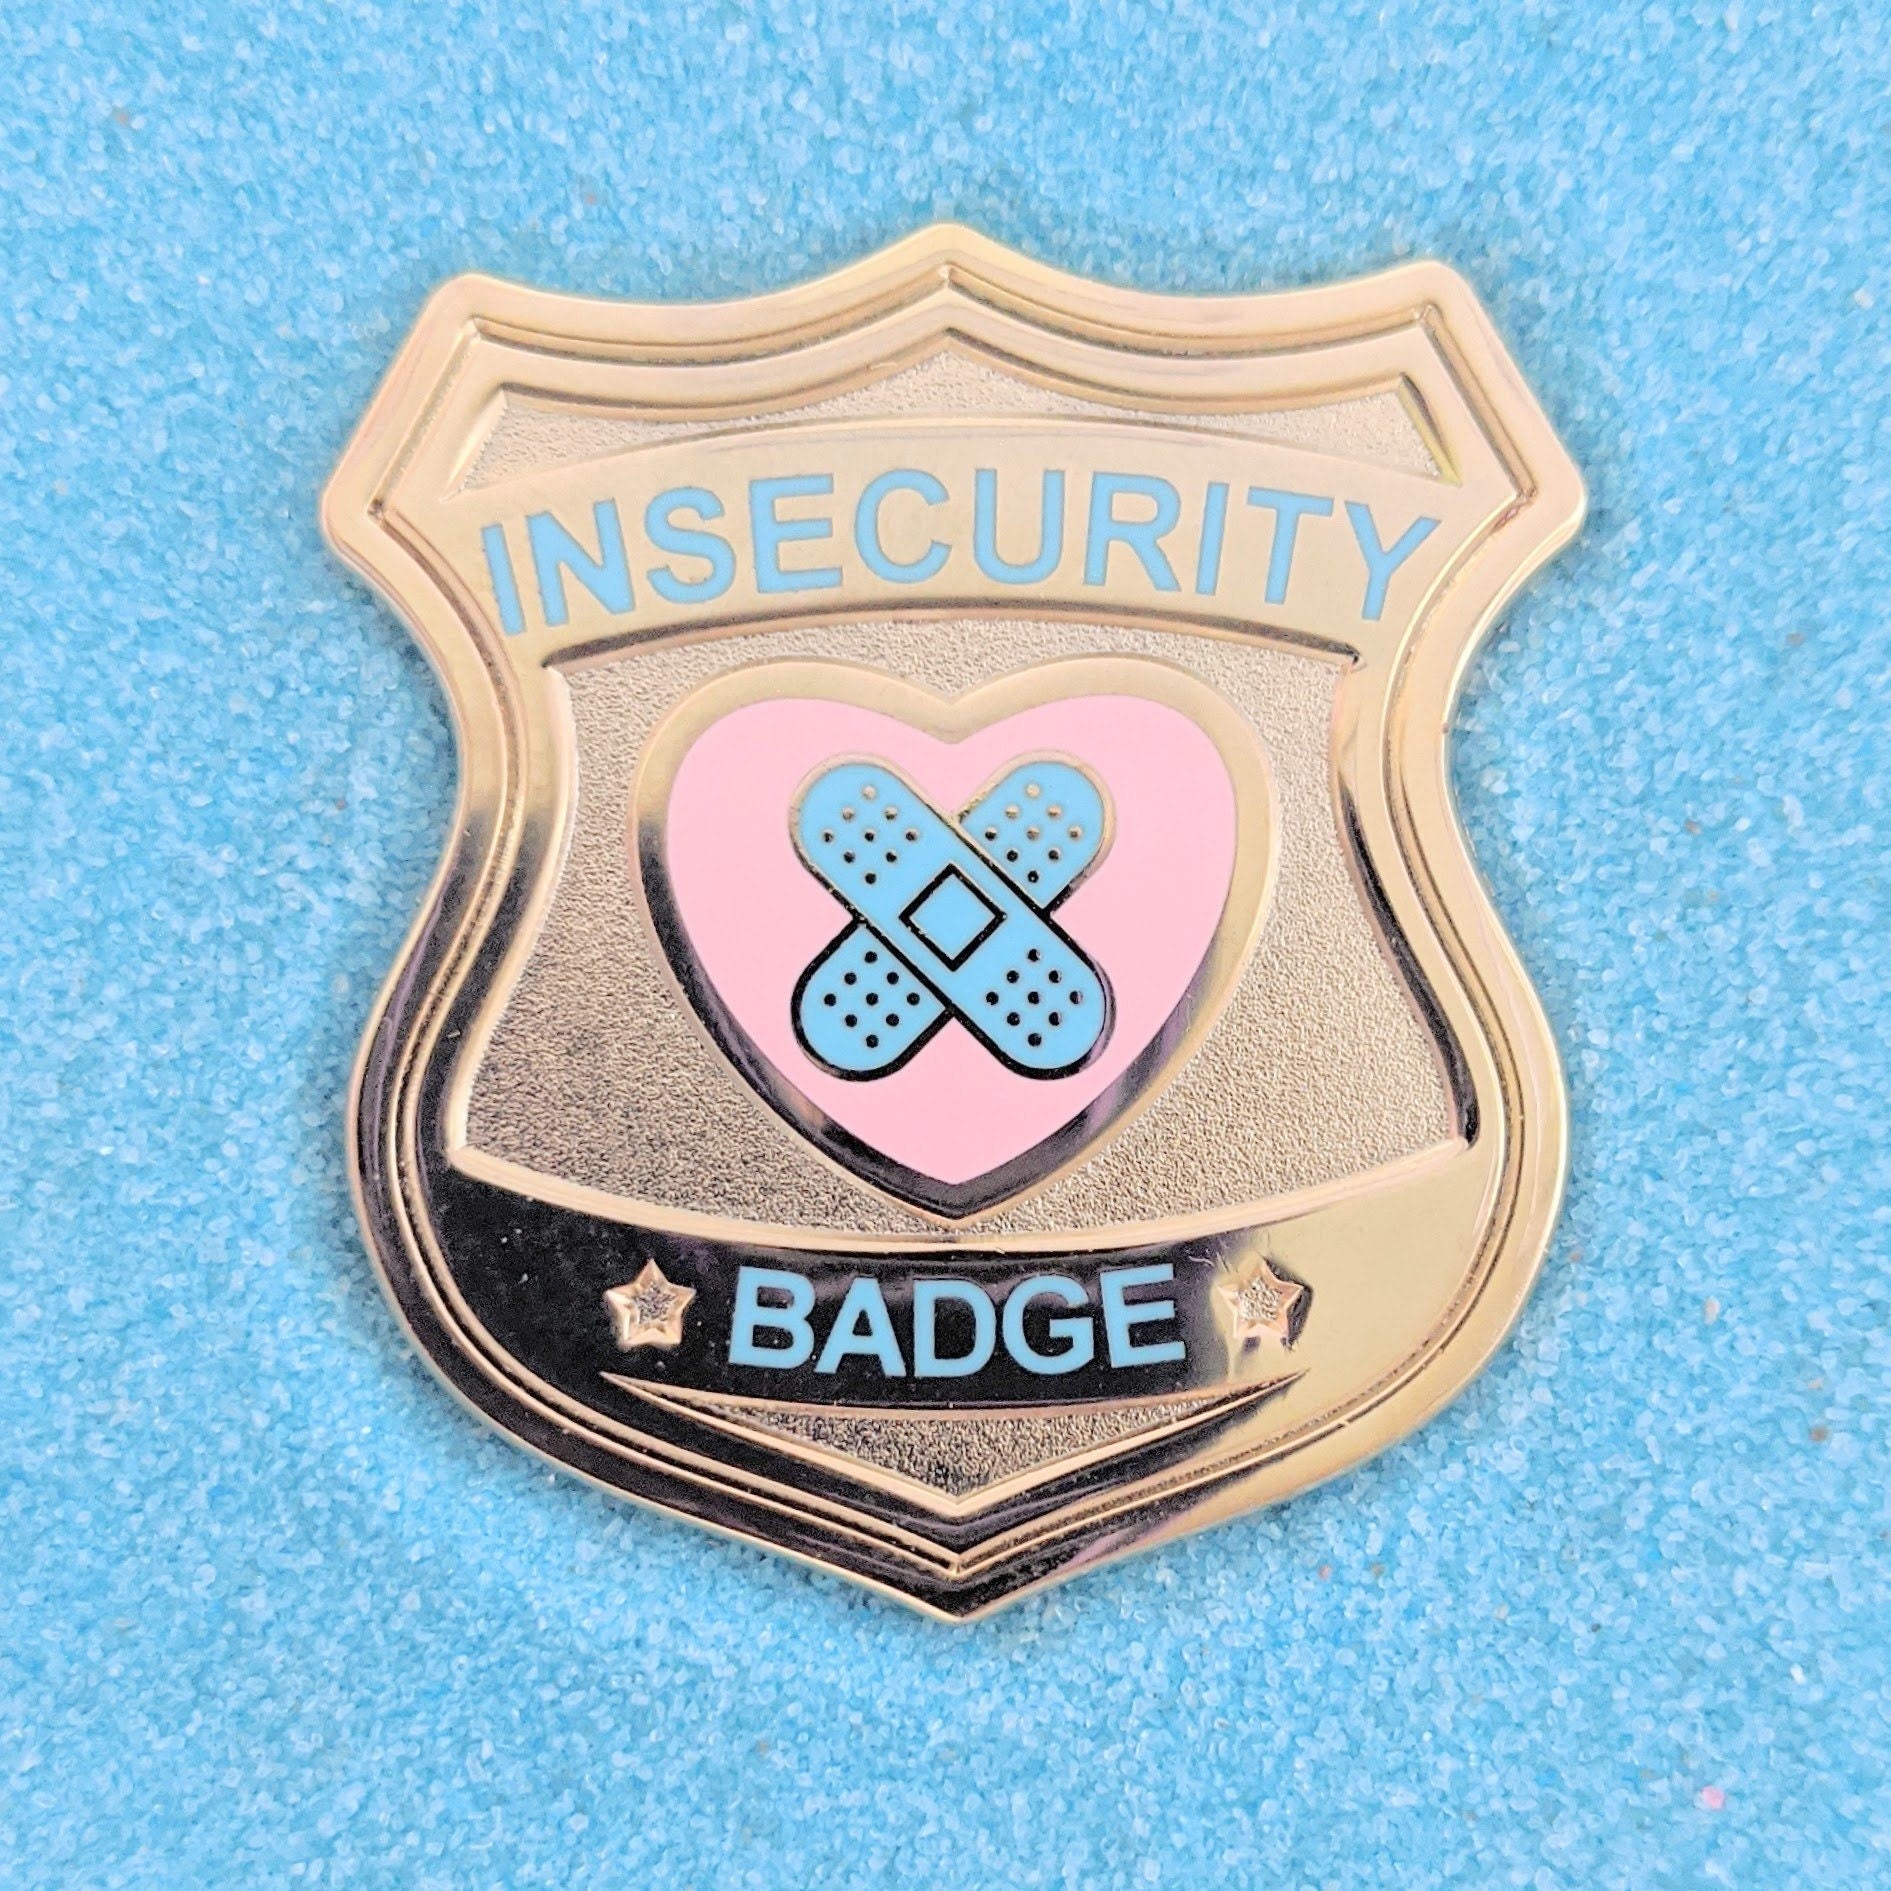 Insecurity Badge Gold - 1.5" Enamel Pin Lapel Metal Badge